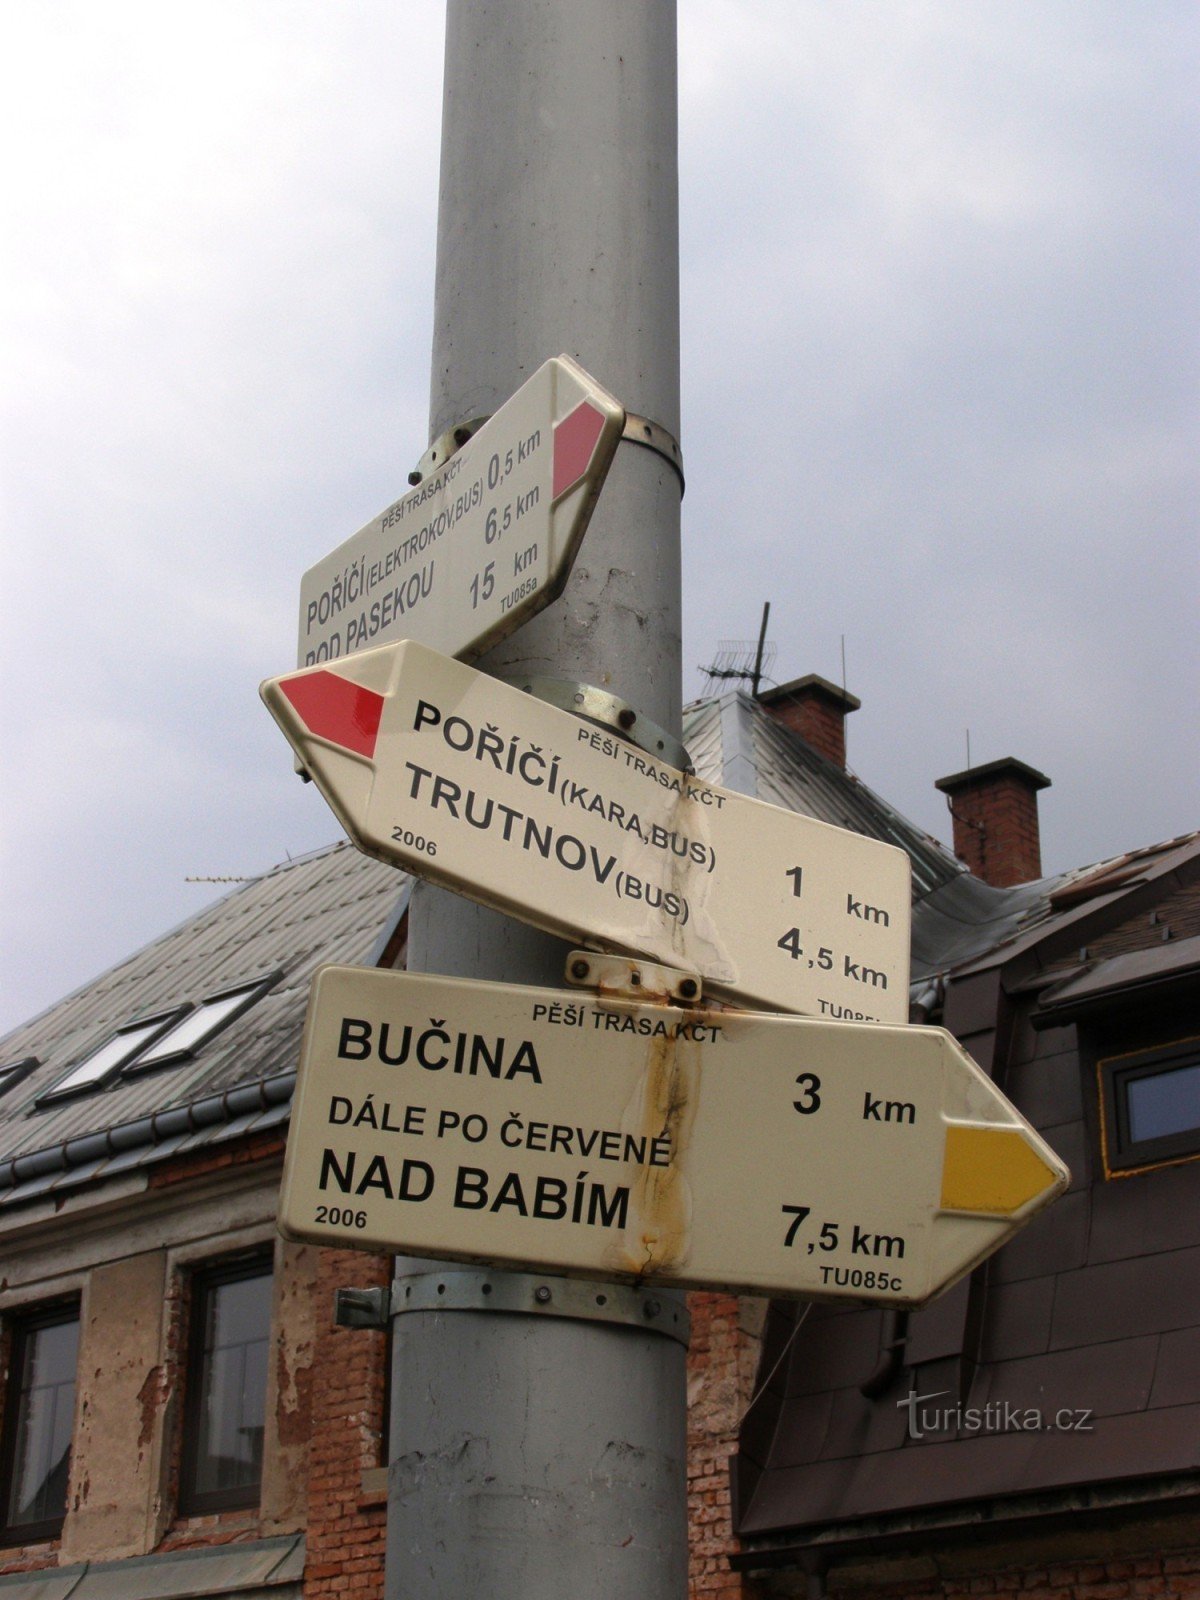 răscruce turistică Trutnov, Poříčí - lângă locul de joacă